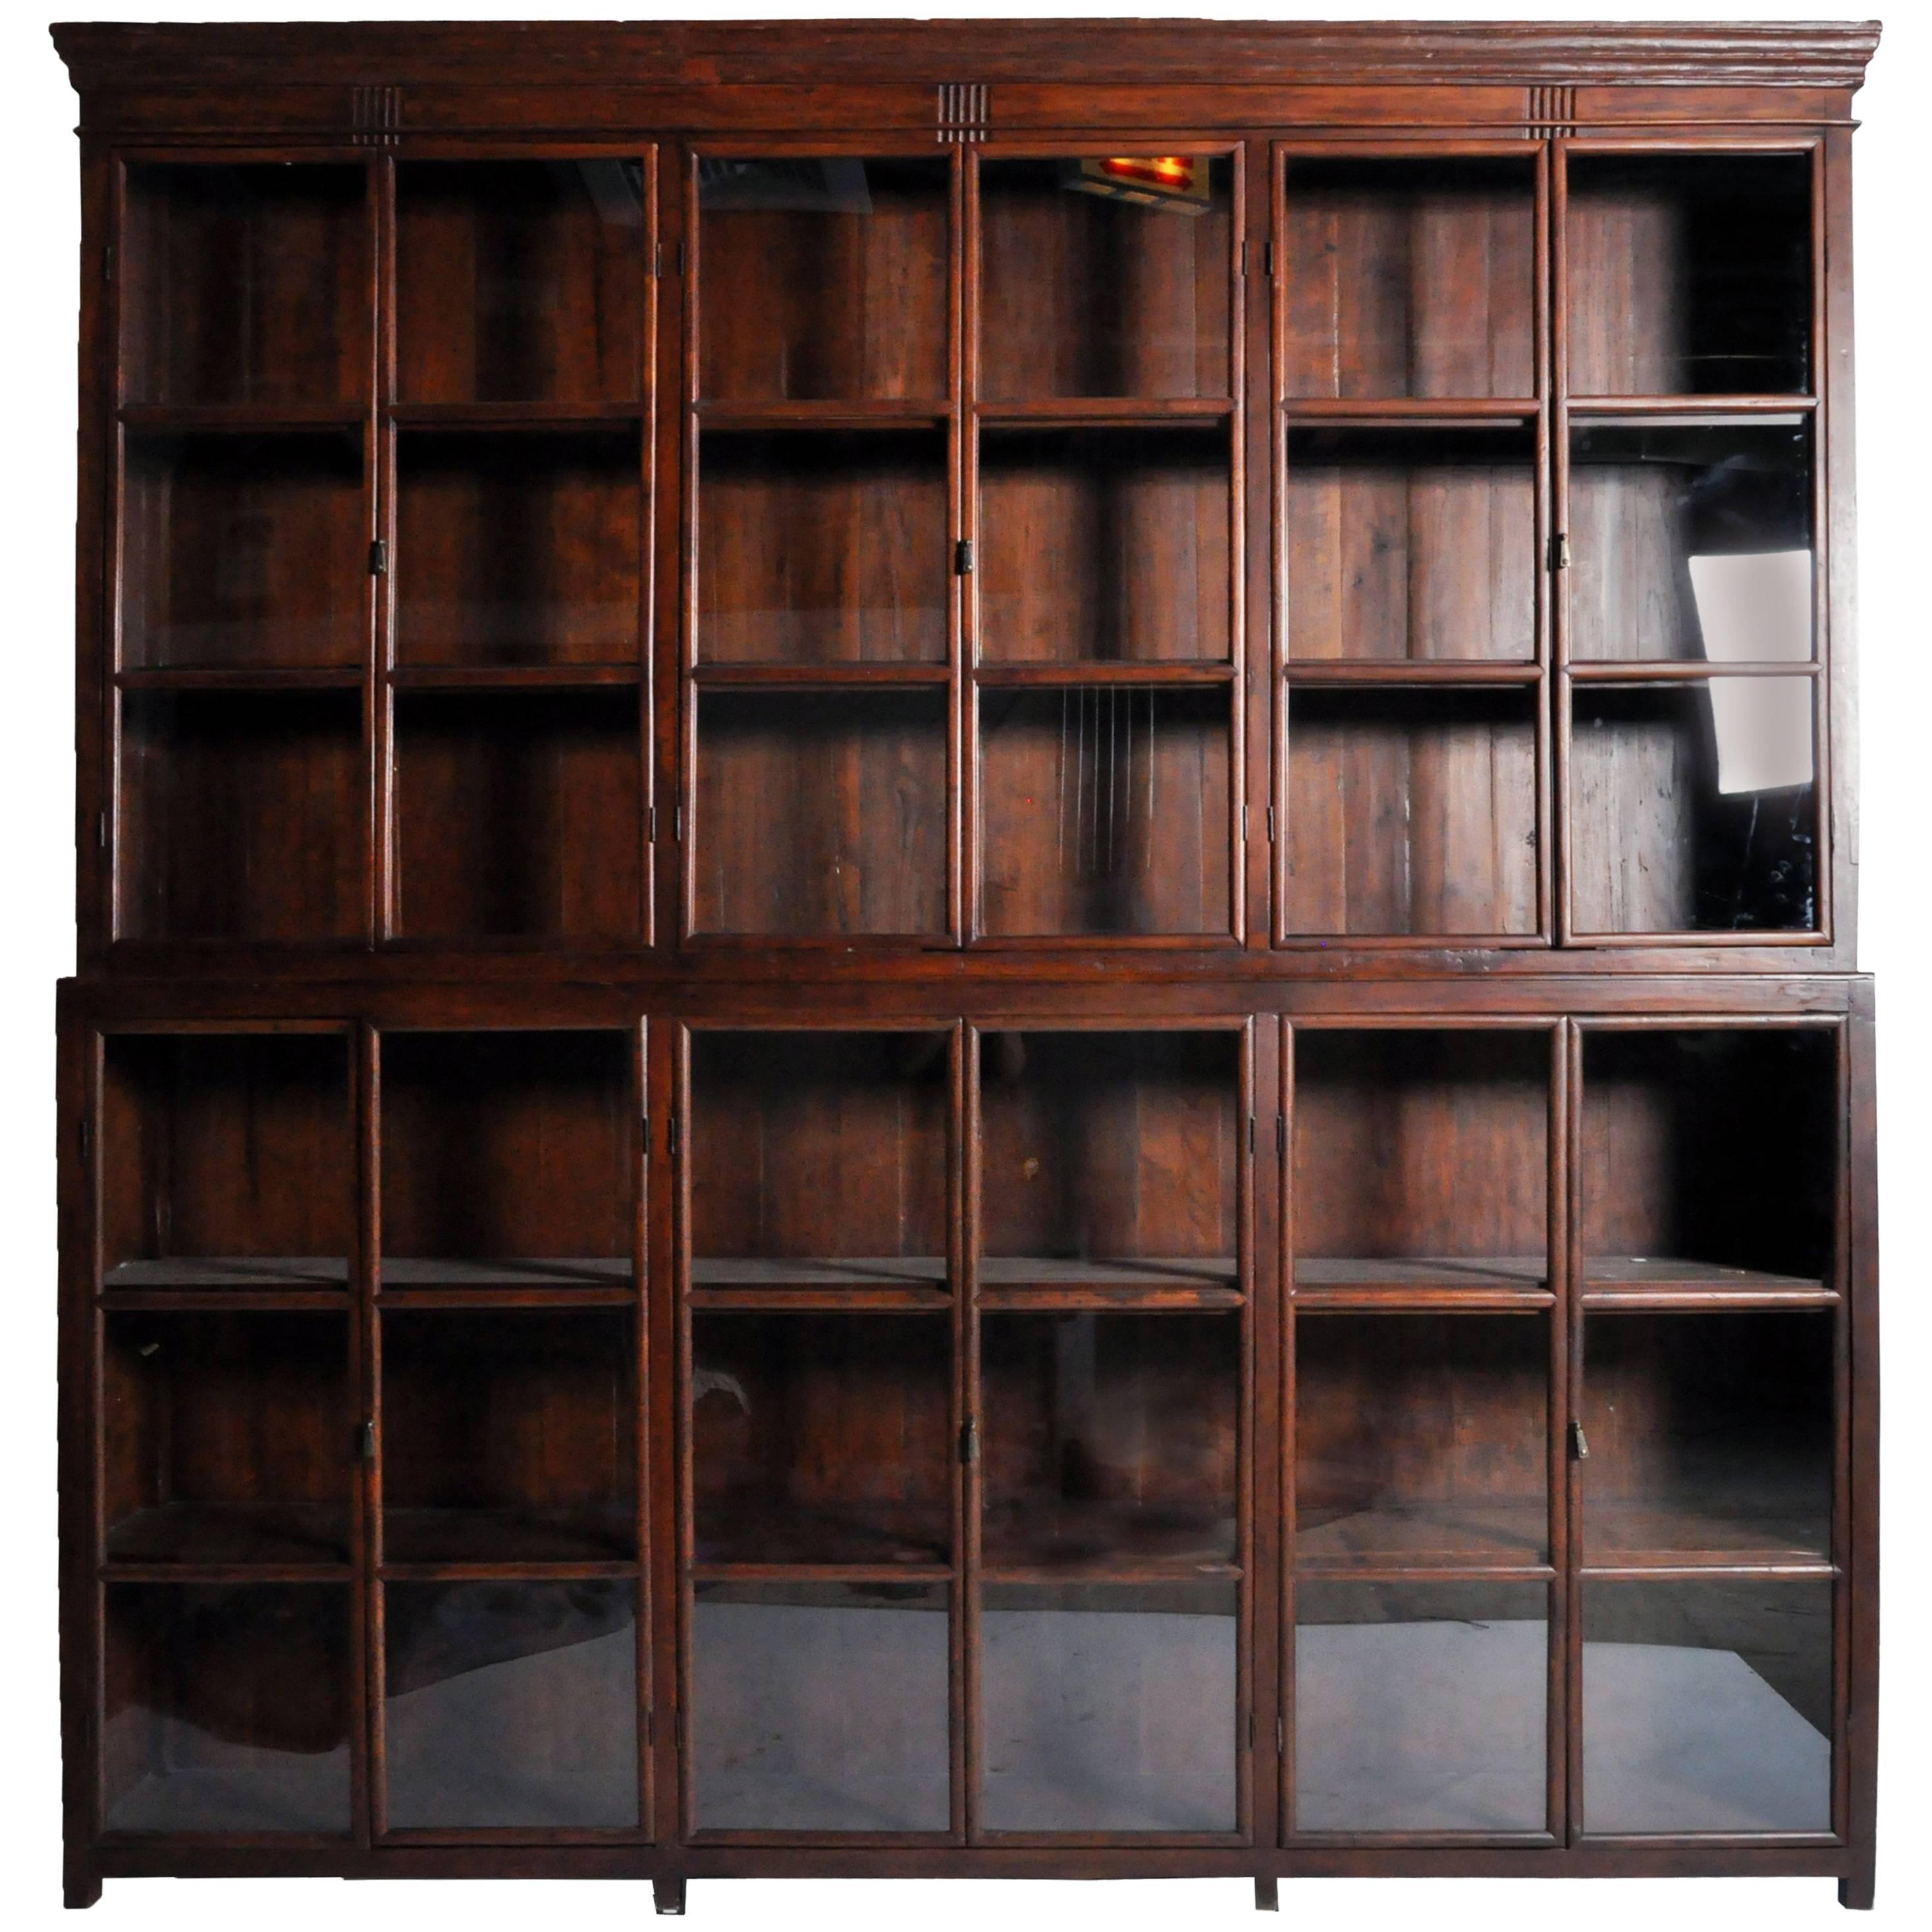 Impressive British Colonial Bookcase